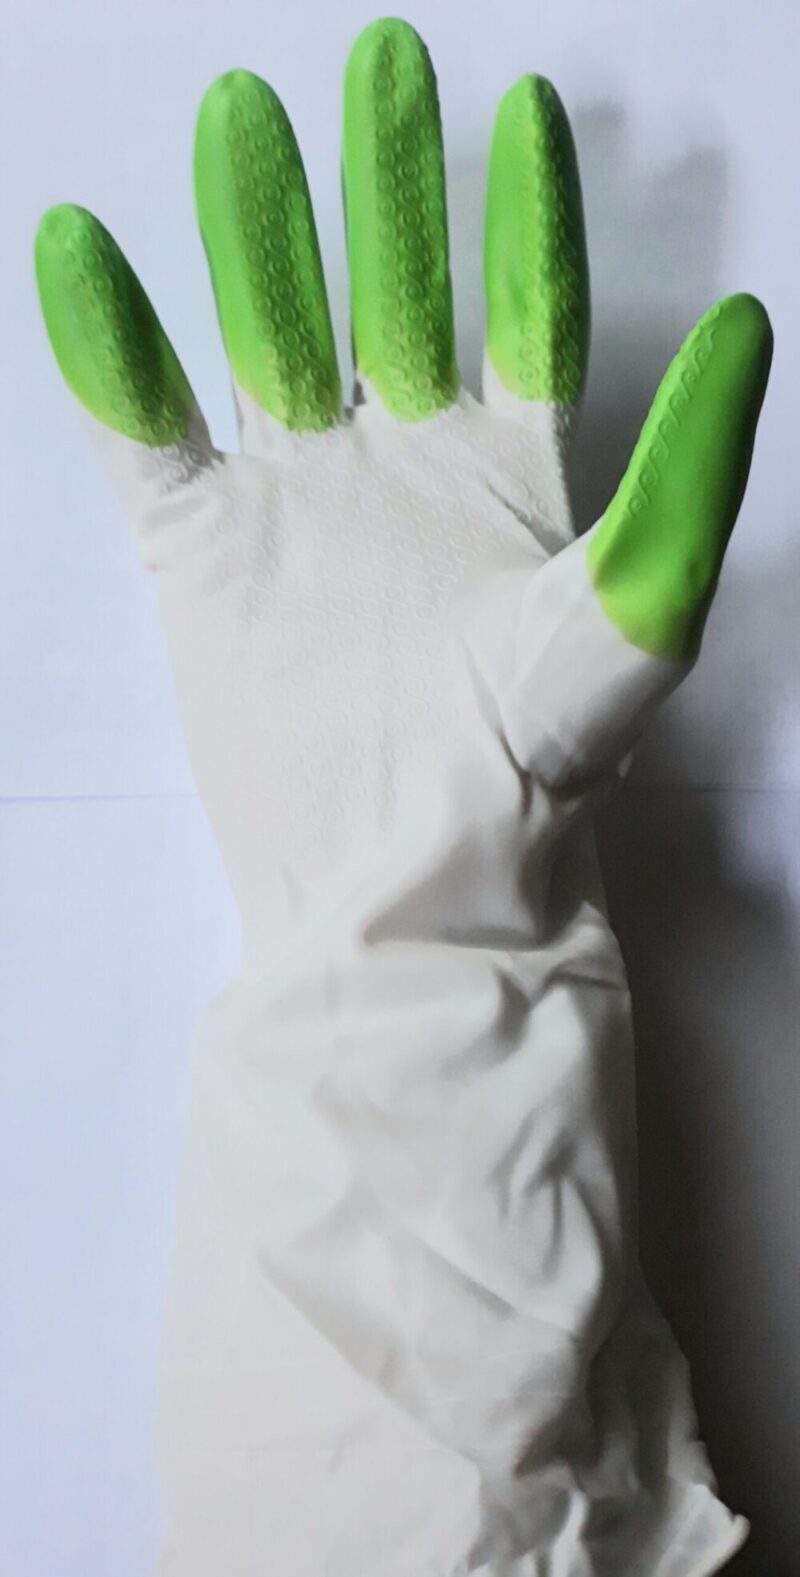 гелиевые перчатки, перчатки, перчатки для клининга, перчатки для уборки .